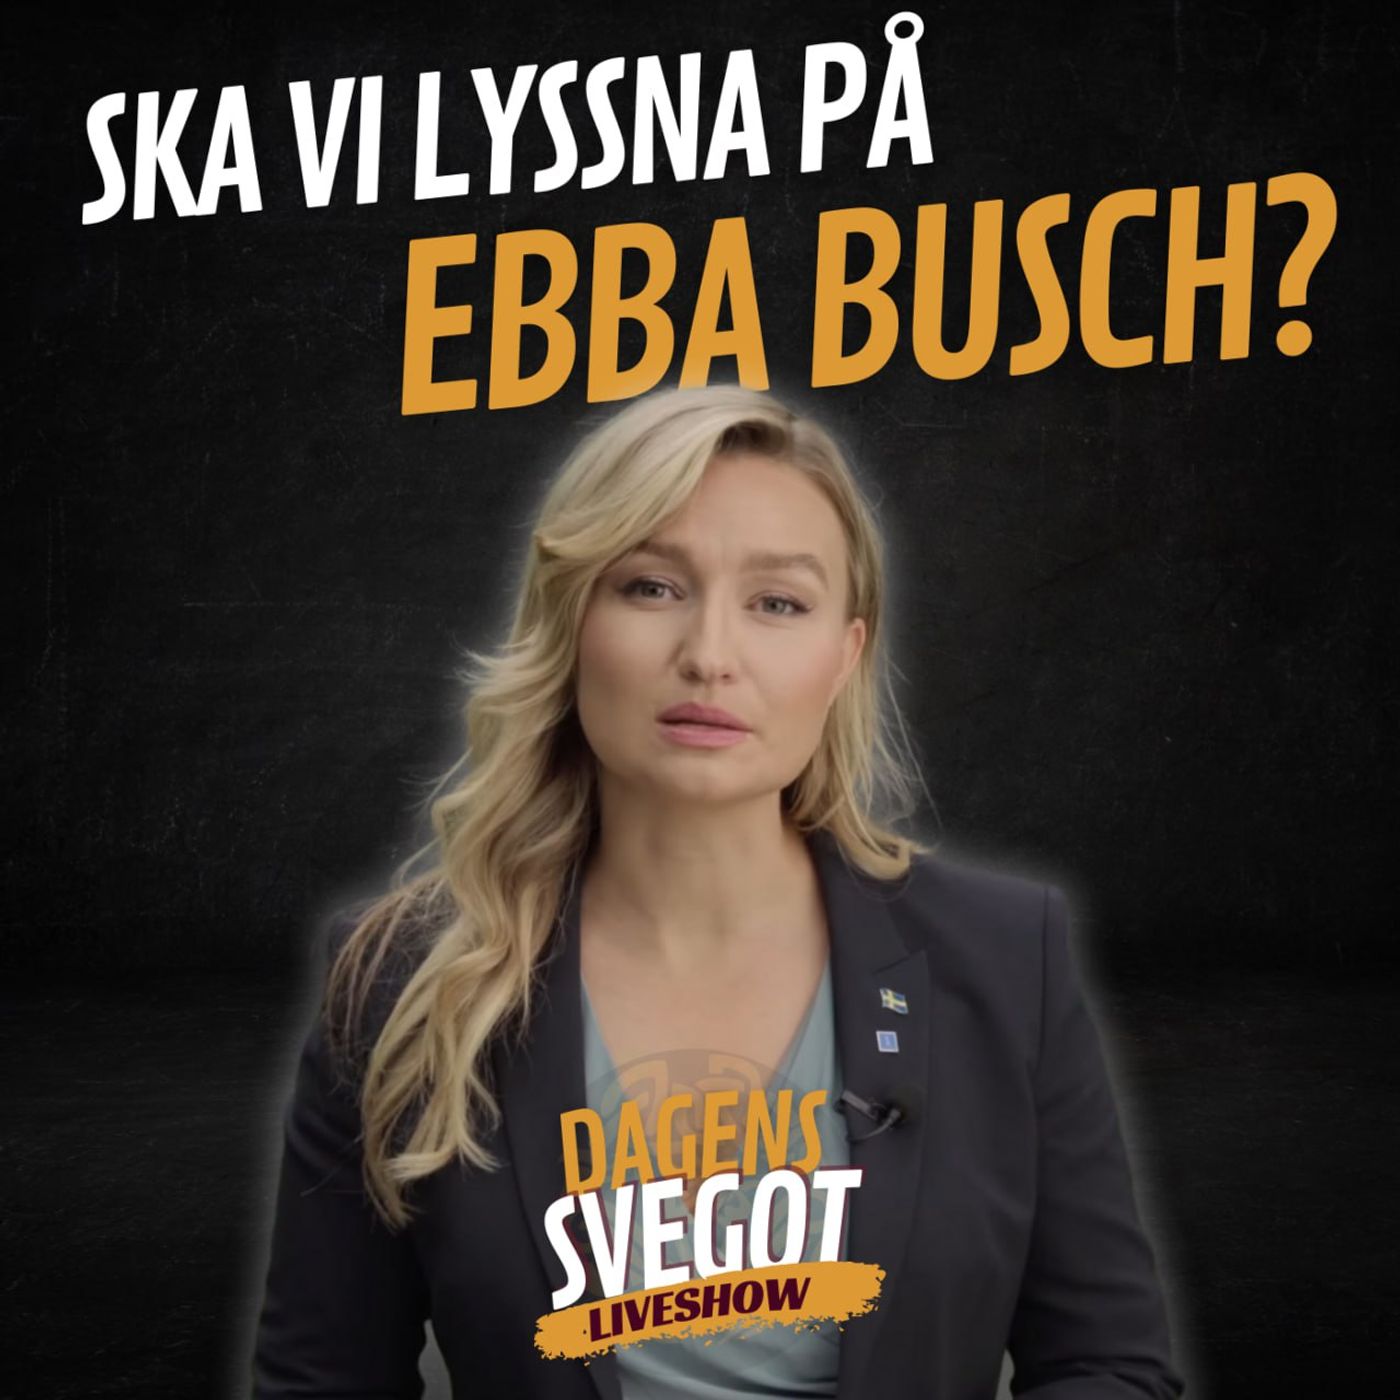 Ska vi lyssna på Ebba Busch?